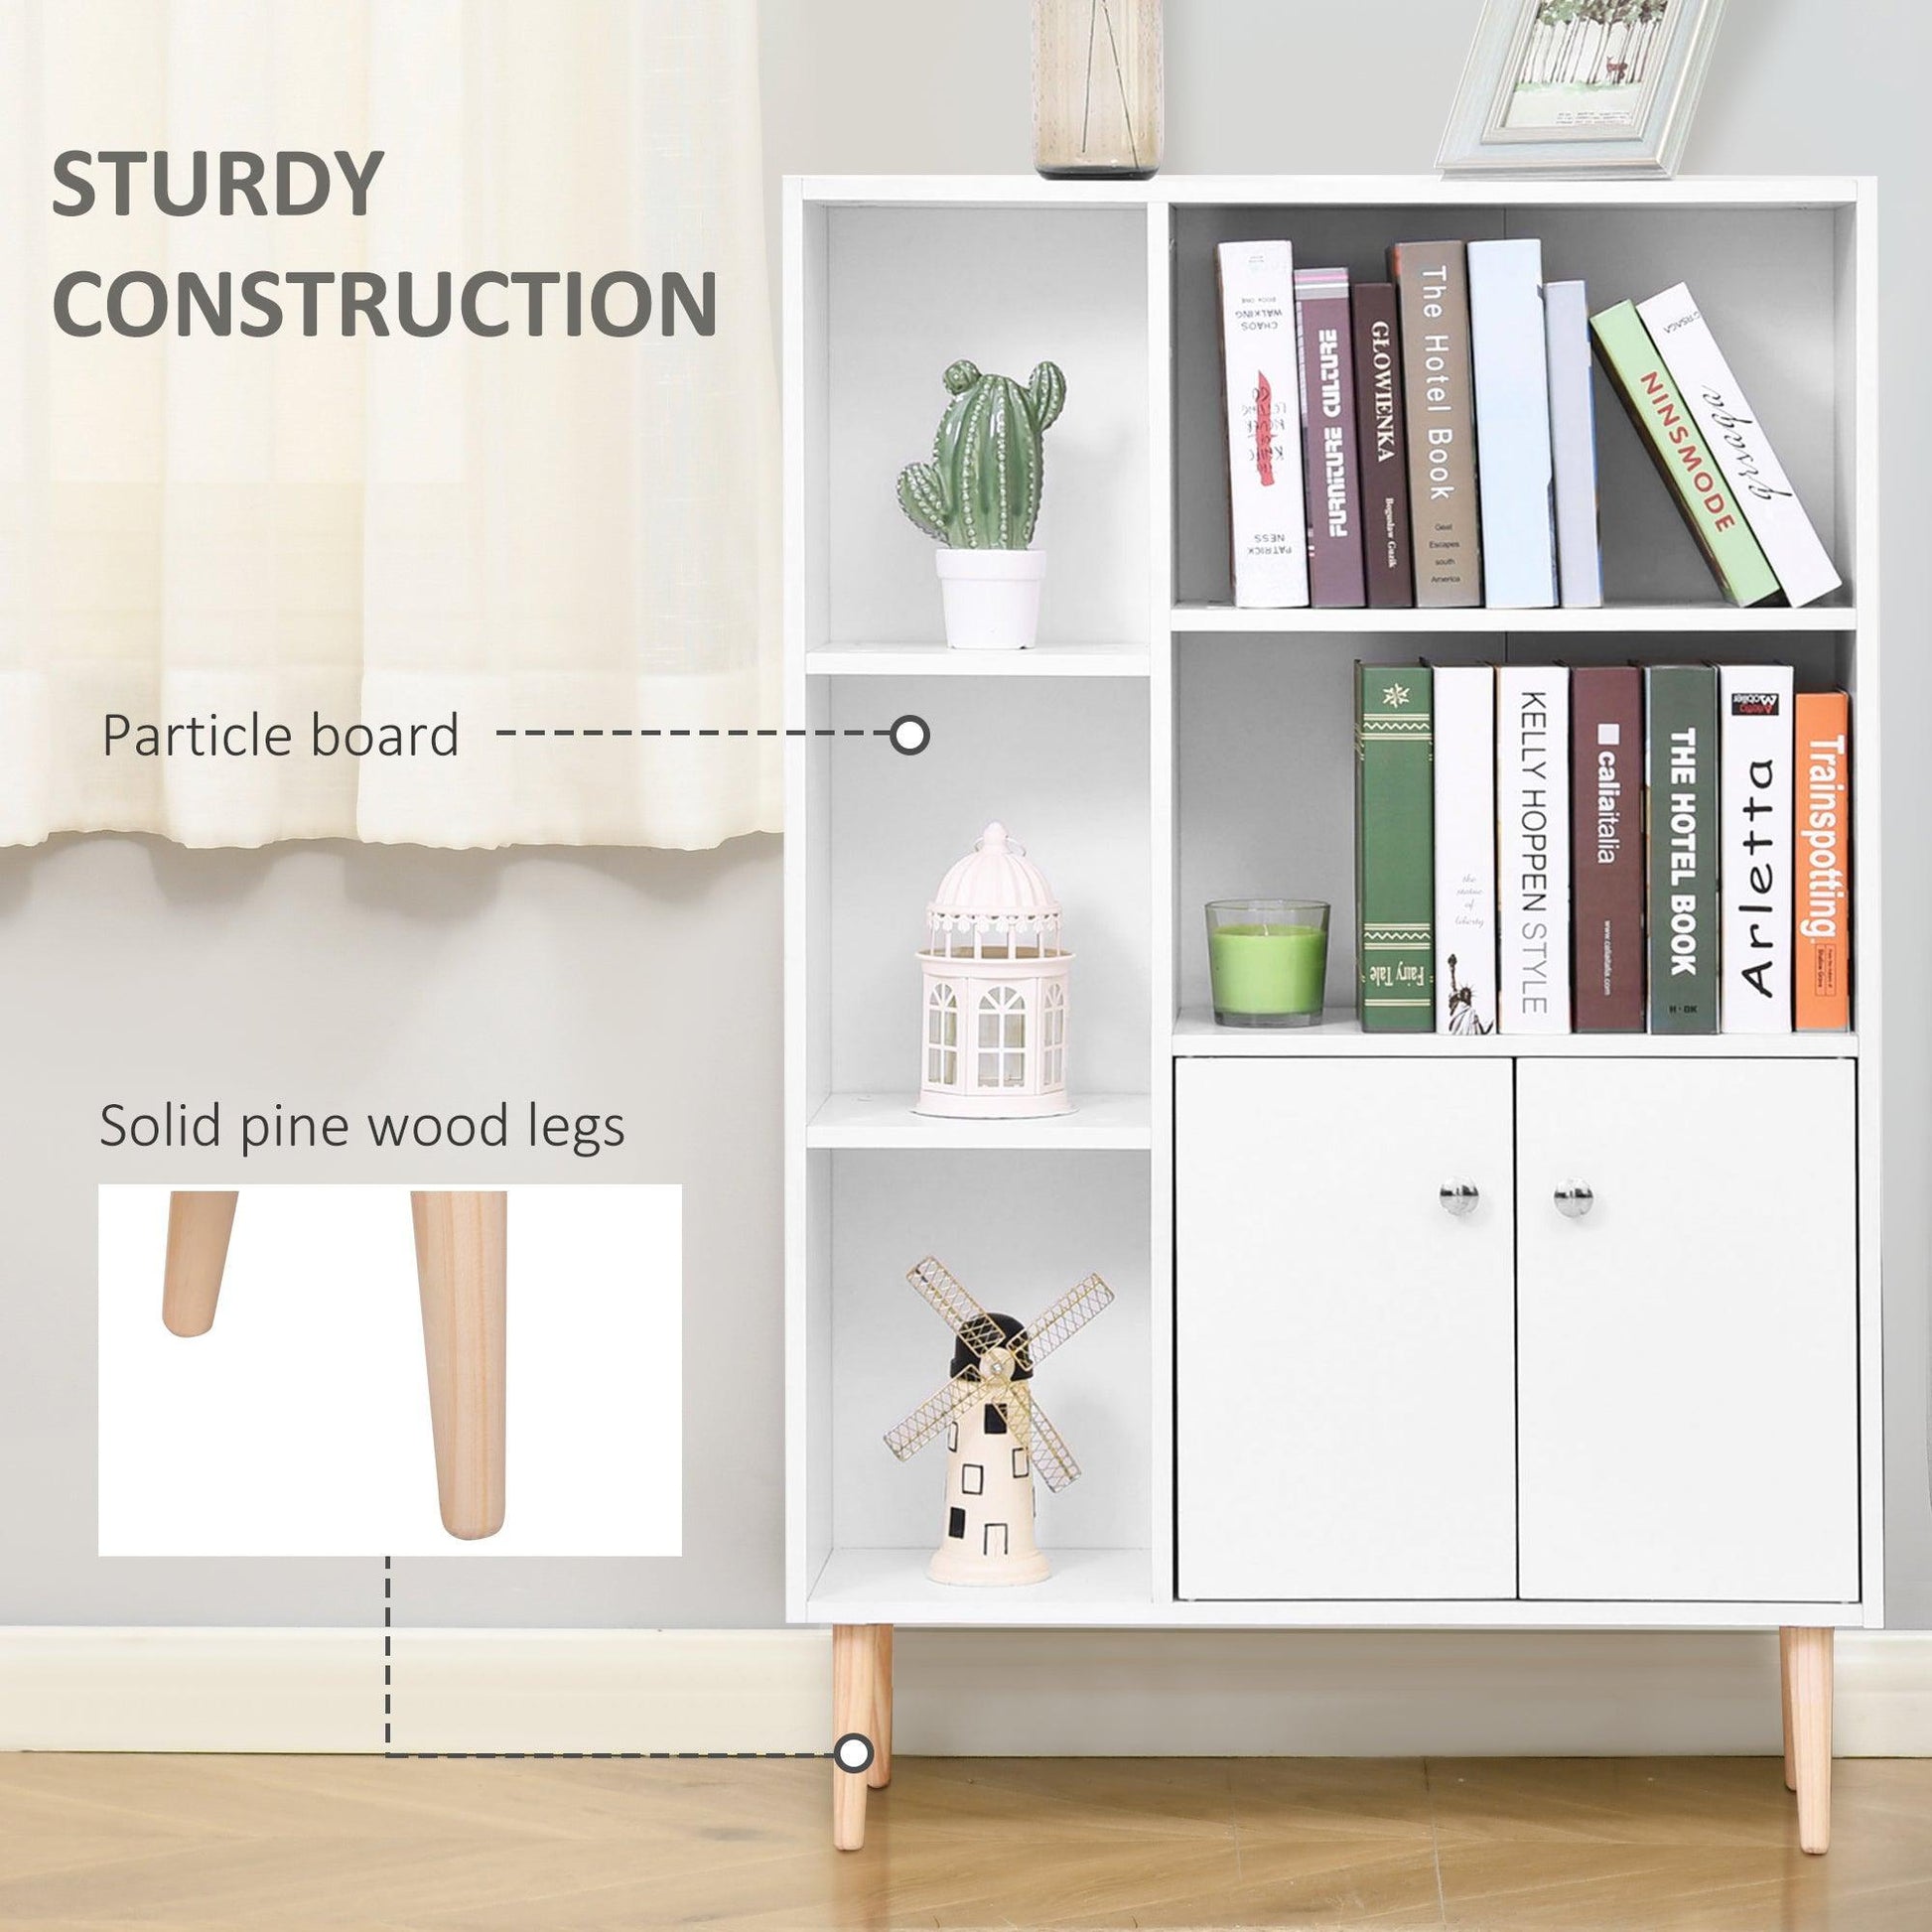 HOMCOM White Wooden Bookcase Cabinet - Sleek Stand - ALL4U RETAILER LTD